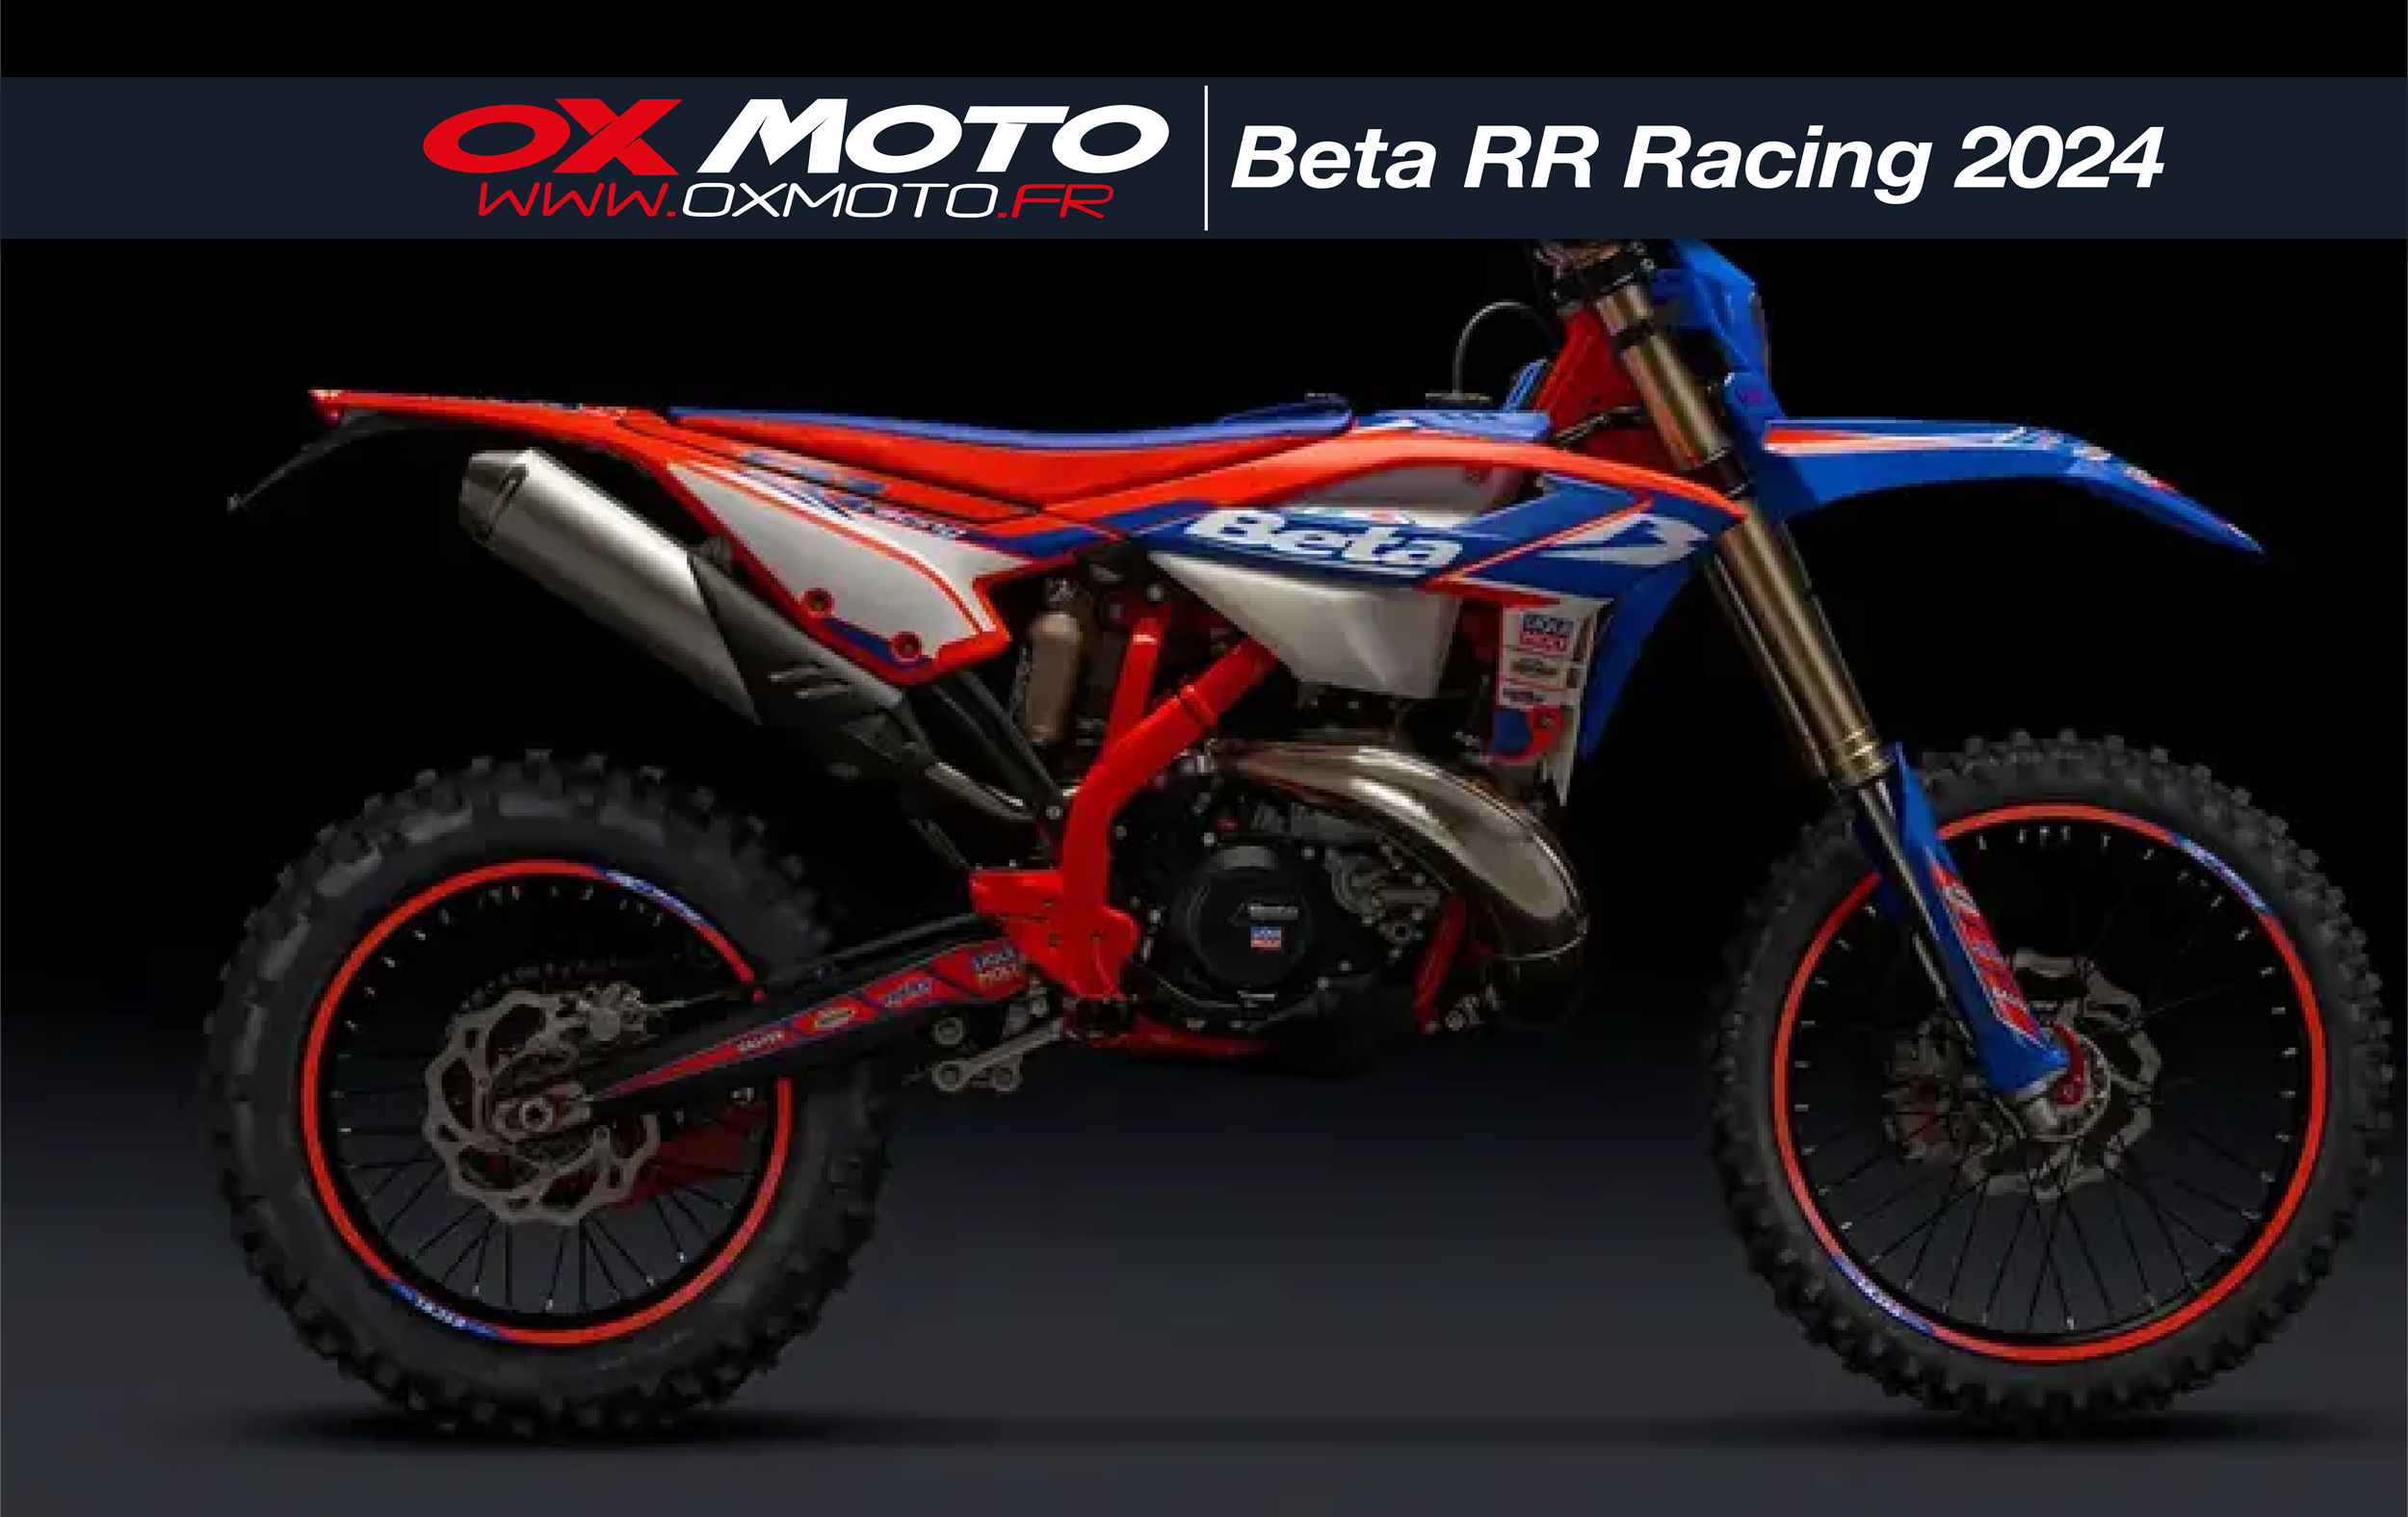 Gamme BETA RR Racing 2024